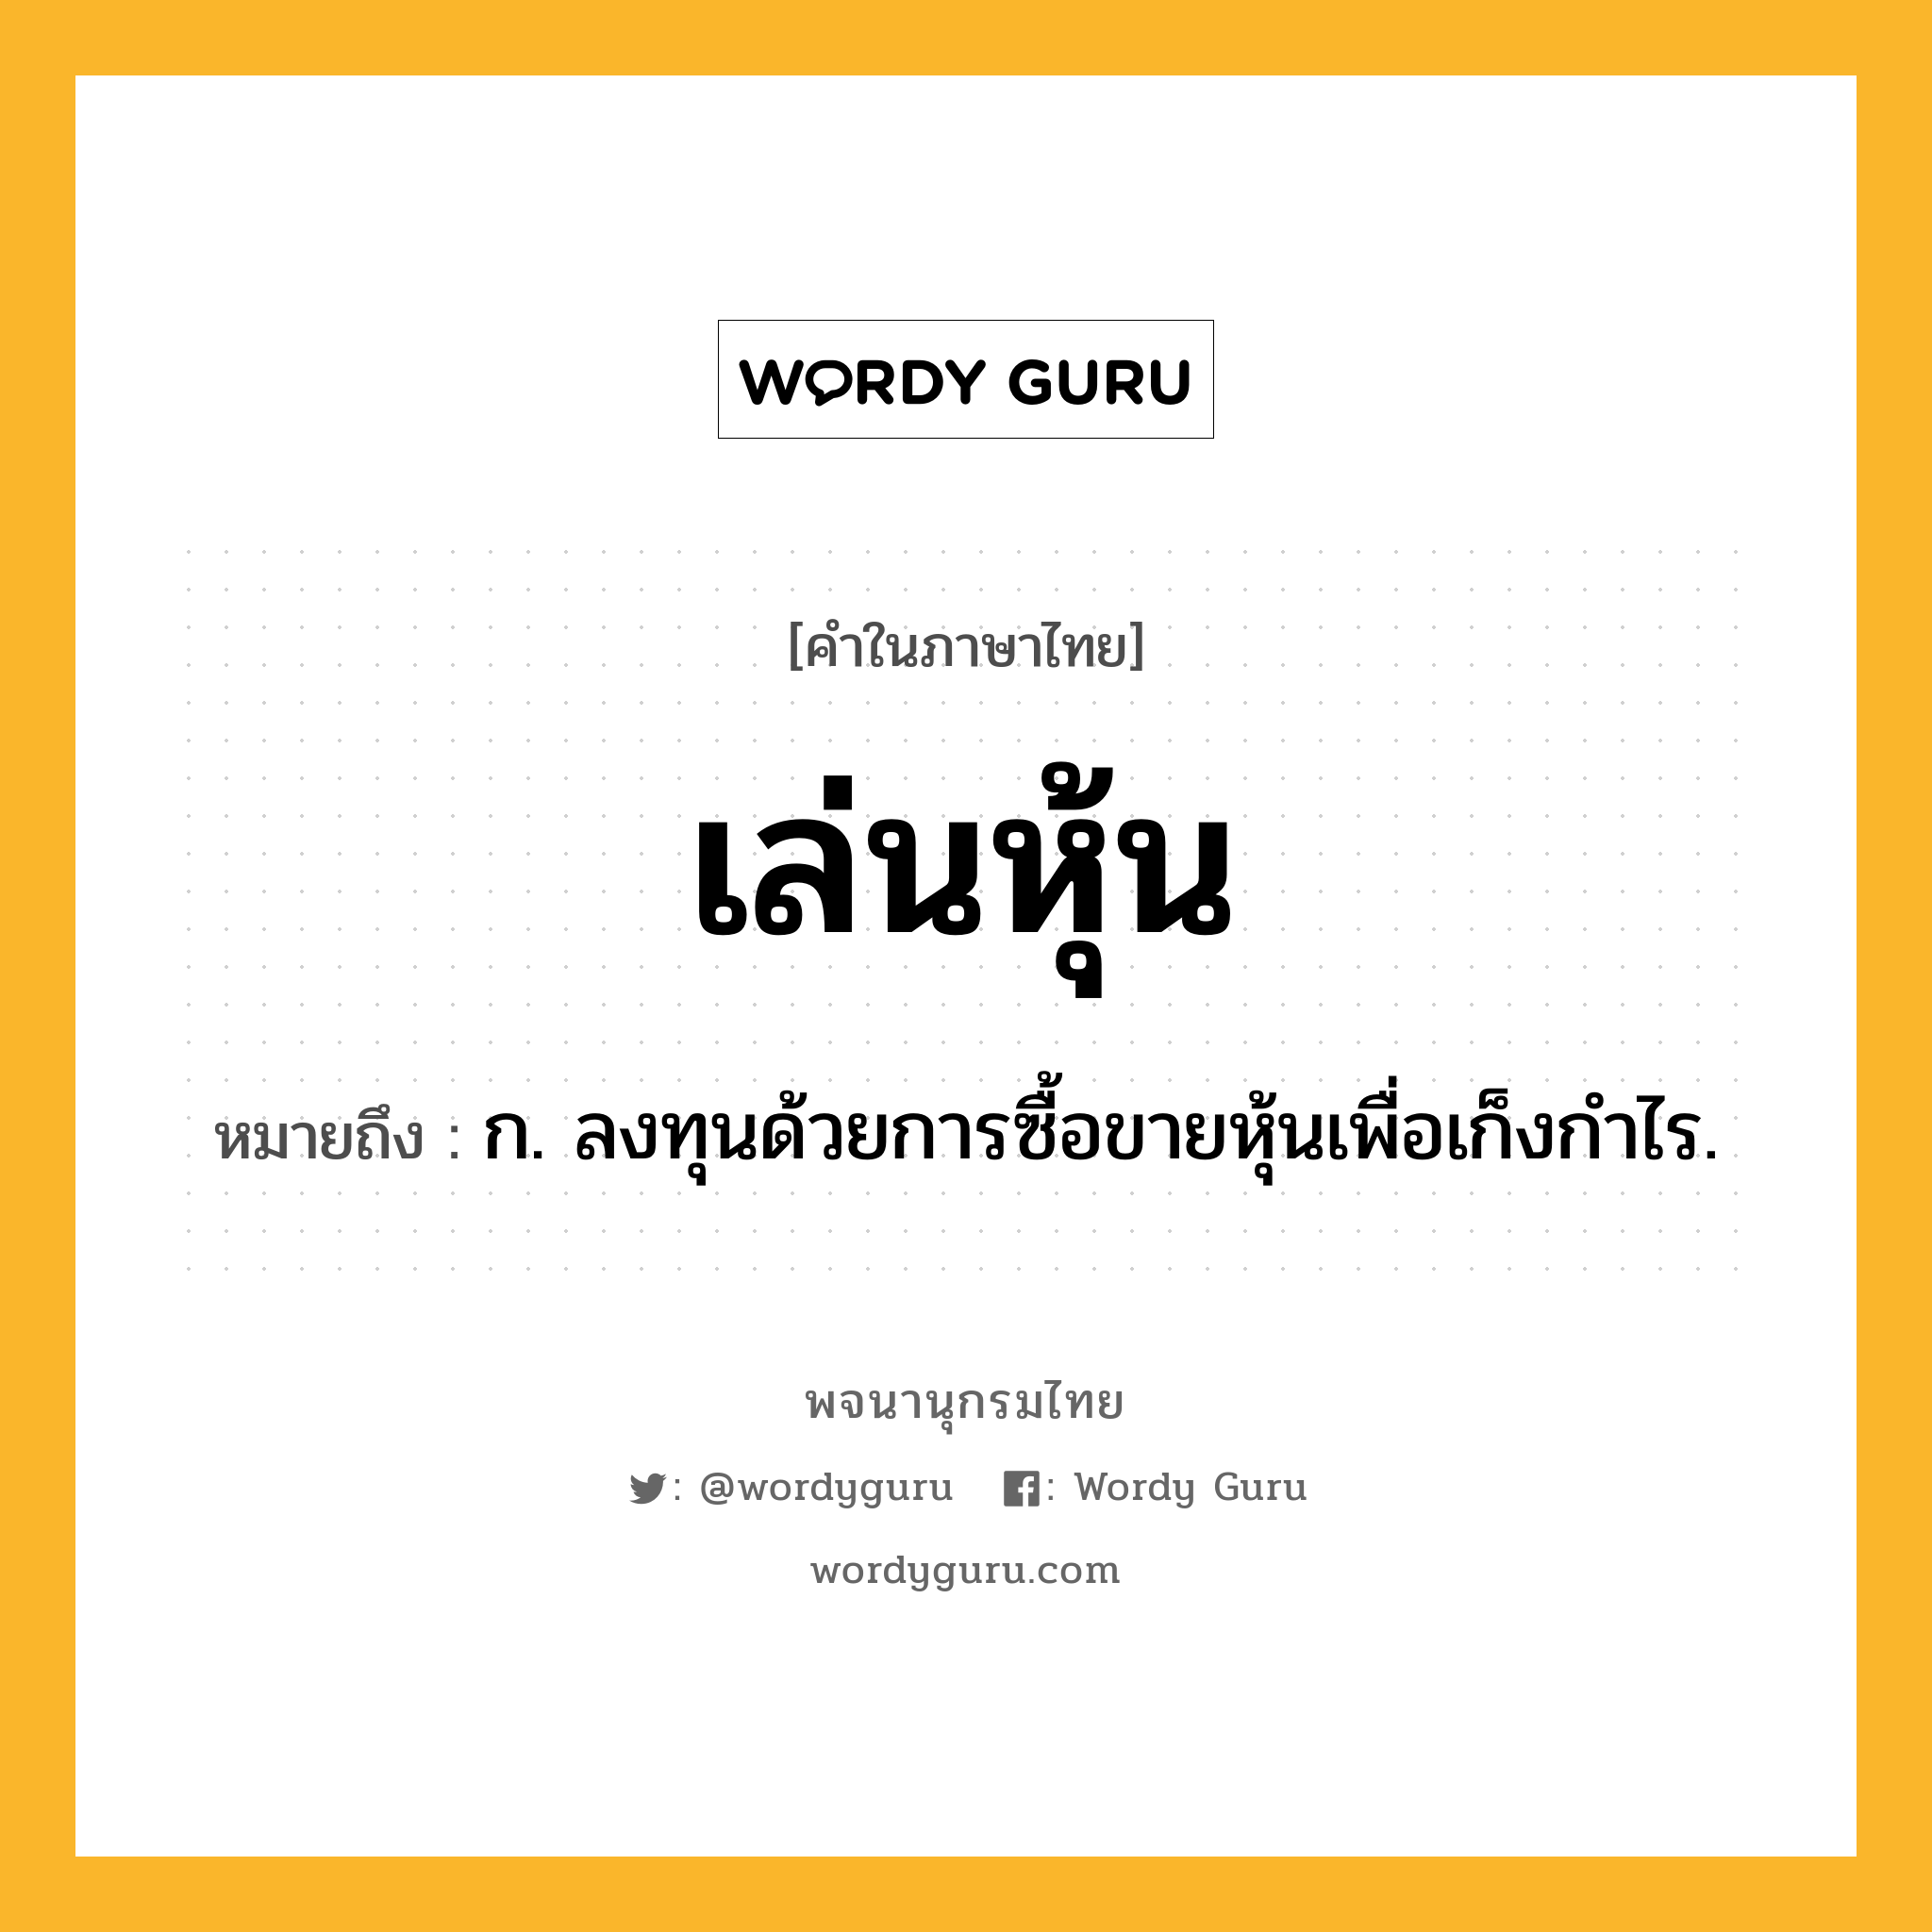 เล่นหุ้น ความหมาย หมายถึงอะไร?, คำในภาษาไทย เล่นหุ้น หมายถึง ก. ลงทุนด้วยการซื้อขายหุ้นเพื่อเก็งกำไร.